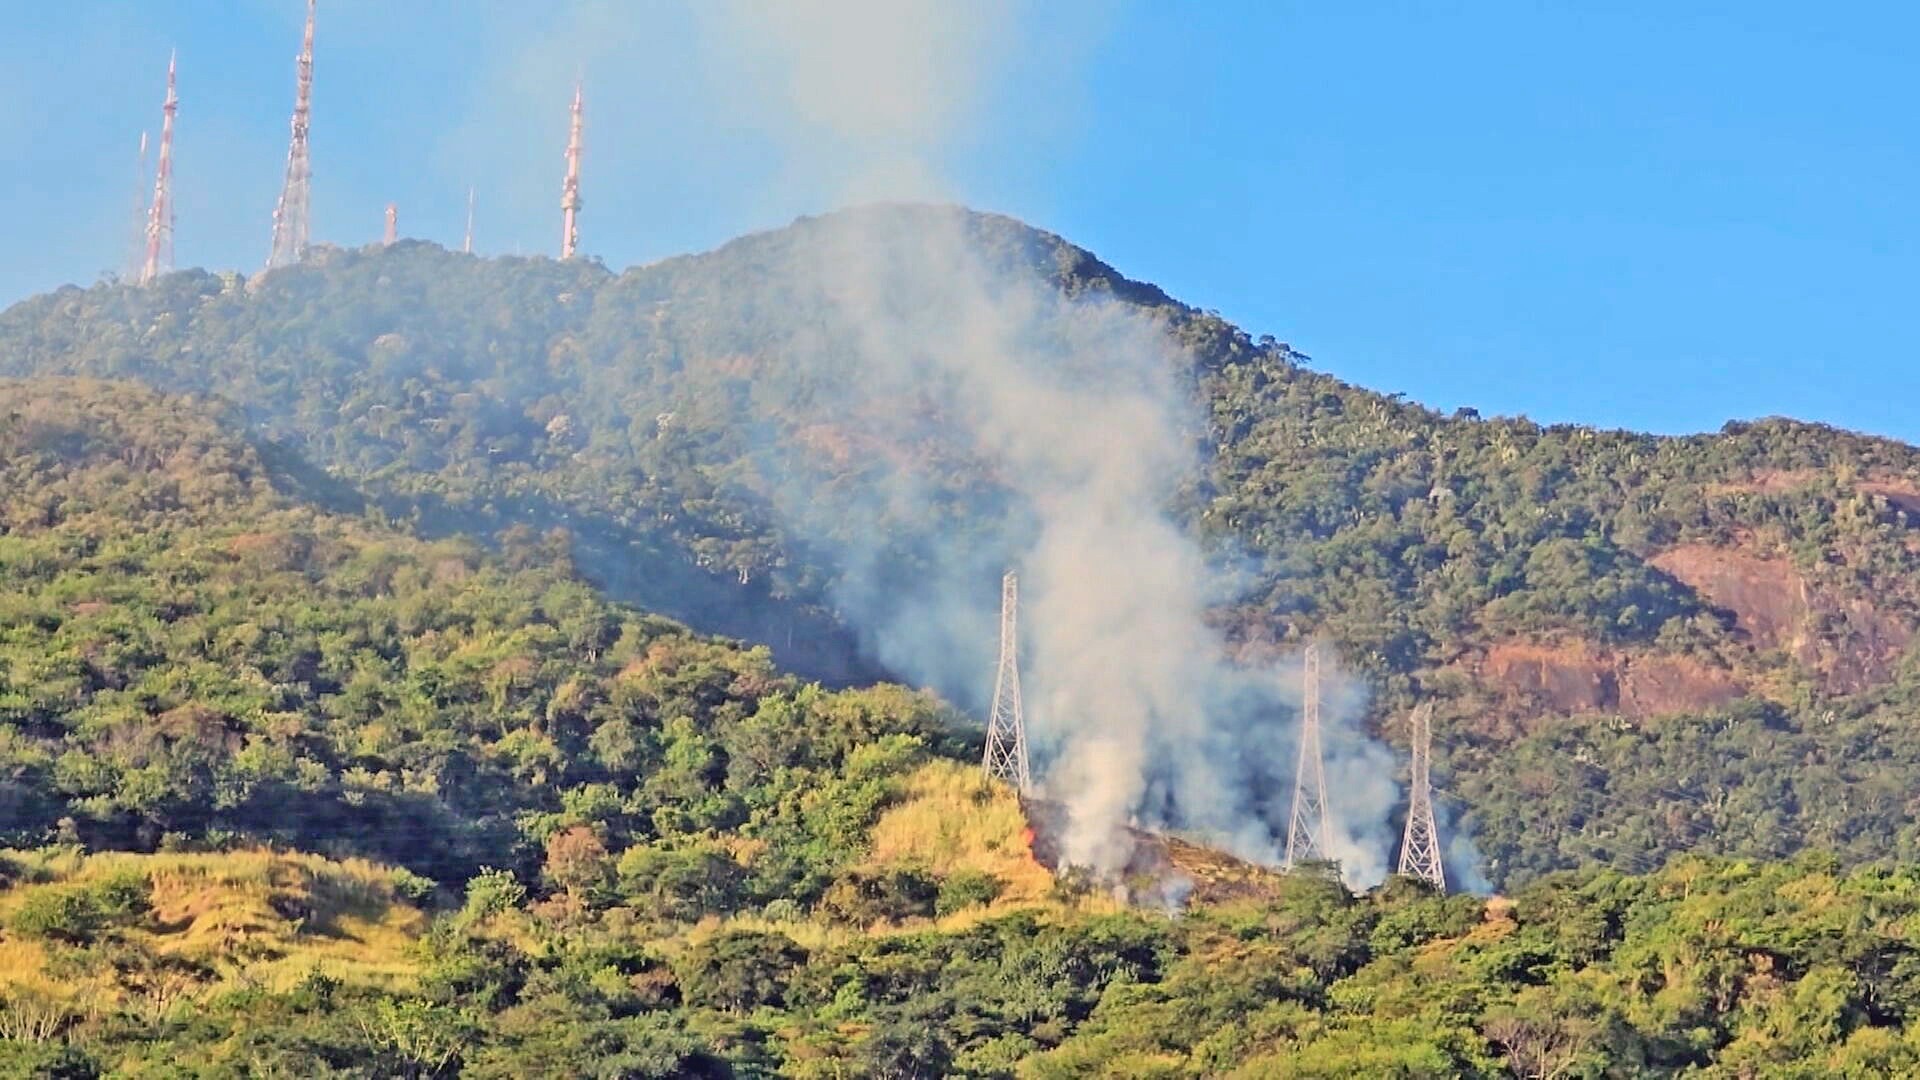 Número de incêndios em mata no RJ mais que dobra em 1 ano: foram 3 casos a cada 2 horas